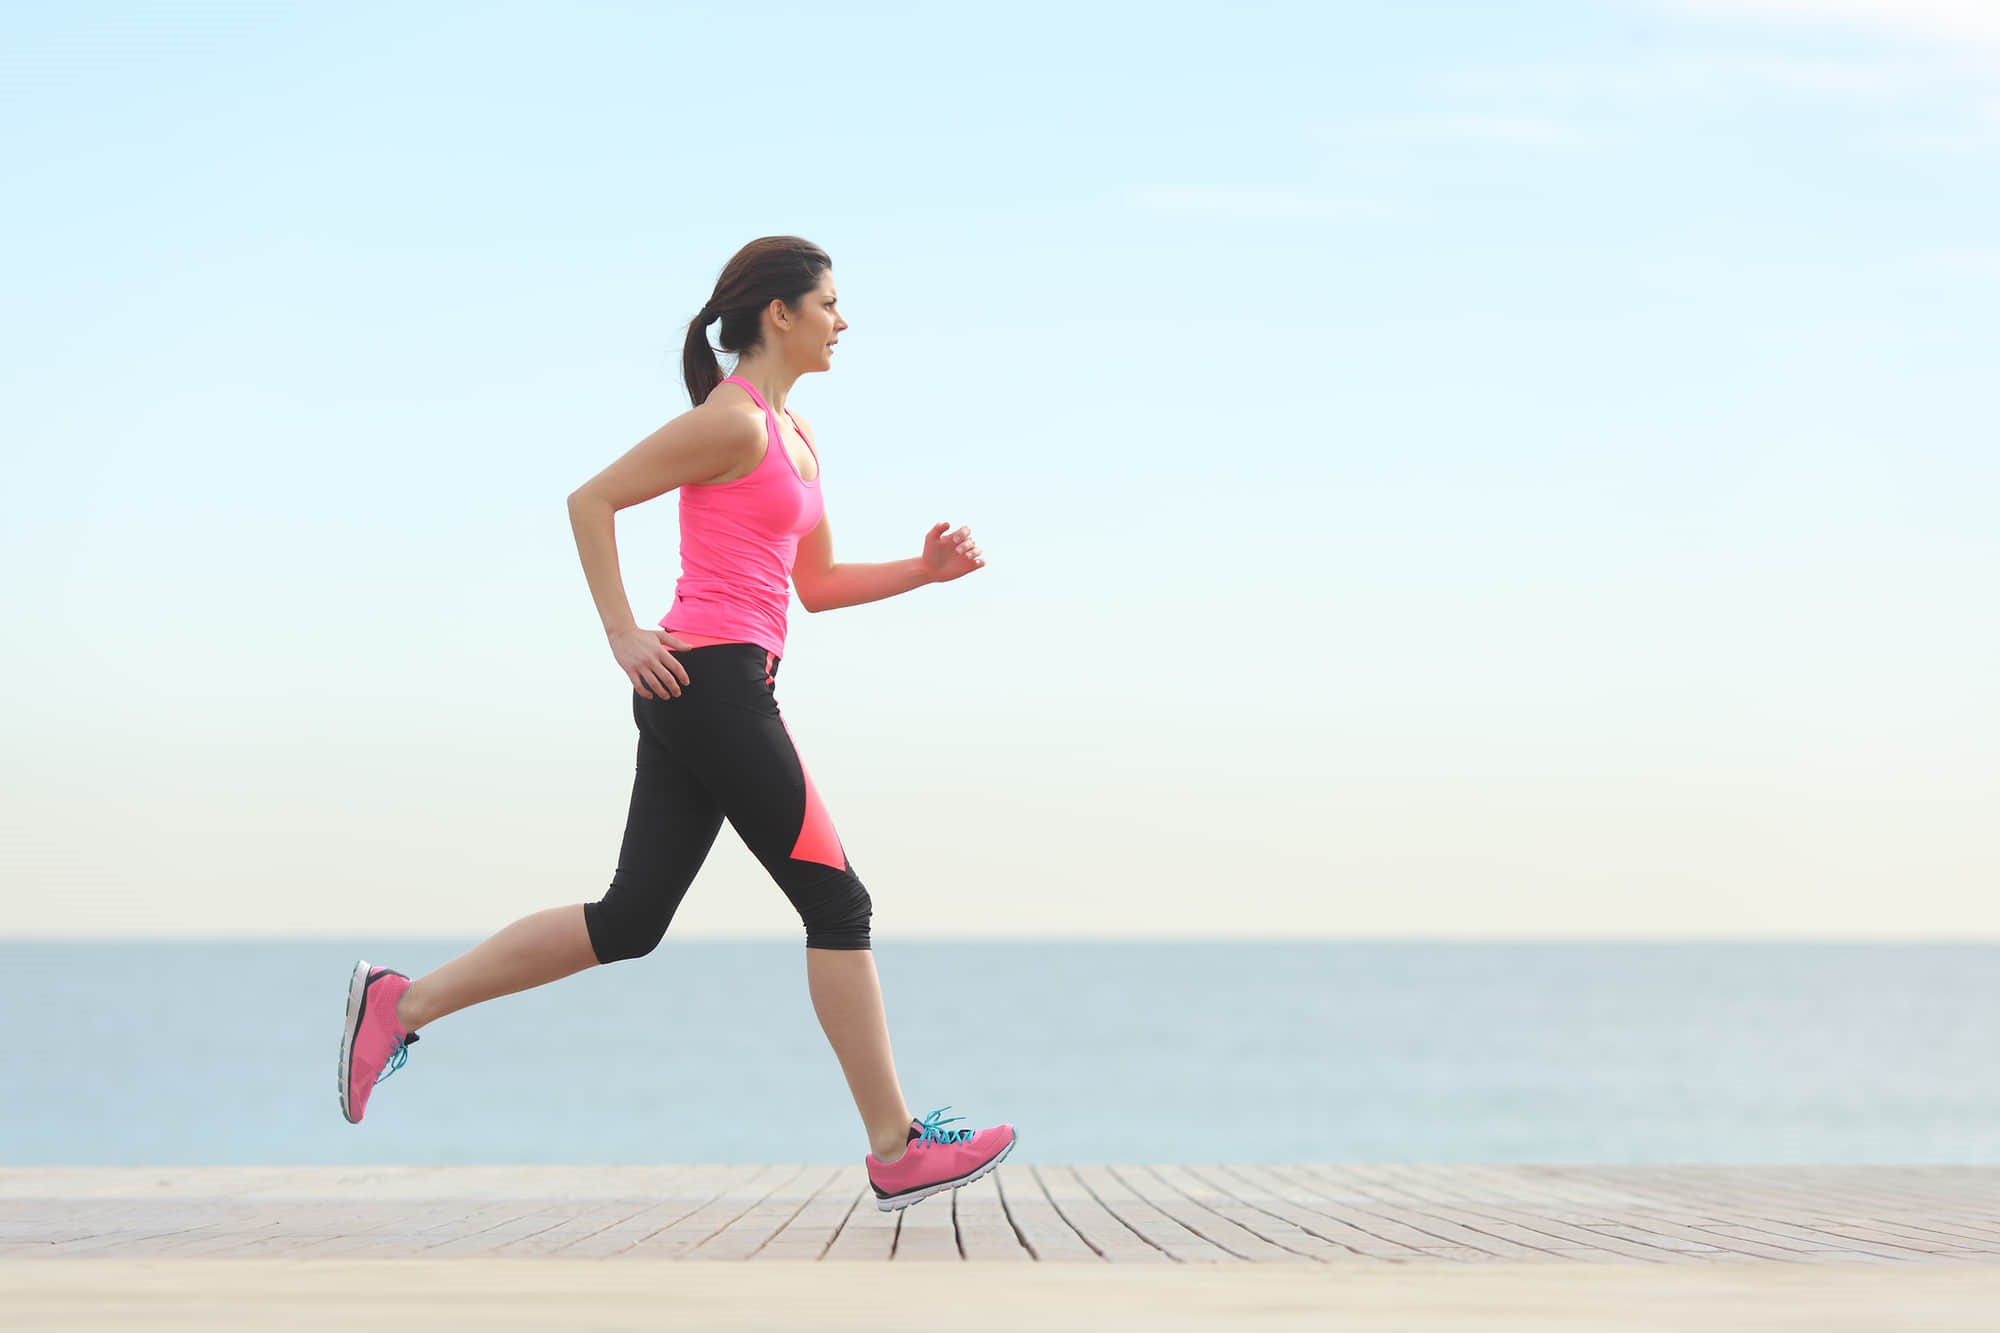 Chạy bộ là một hình thức thể dục tuyệt vời để tăng cường sức khỏe